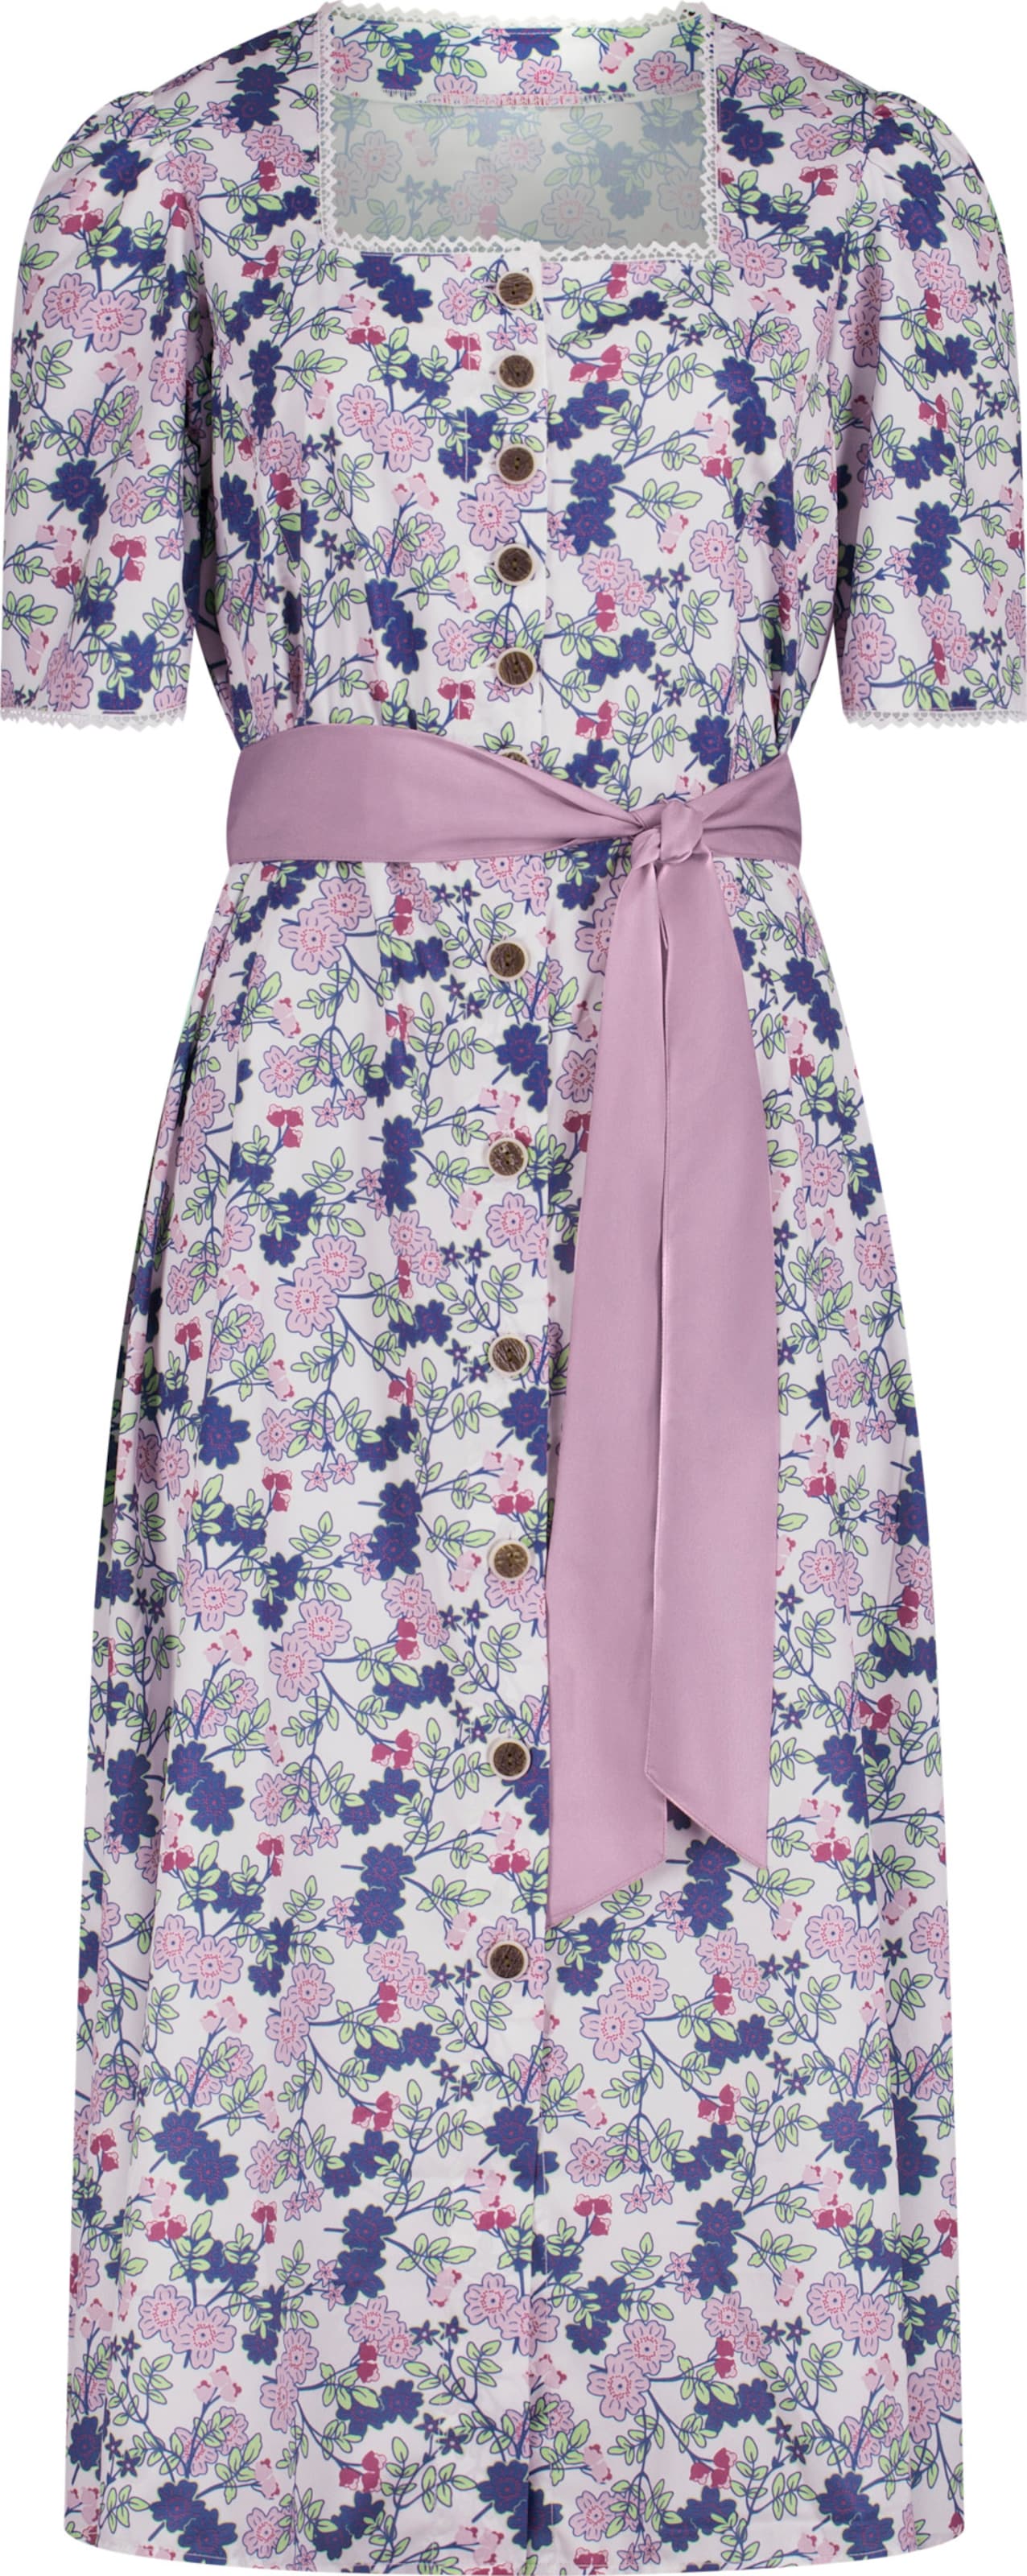 Your Look... for less! Dames jurk in klederdrachtstijl roze/jeansblauw bedrukt Maat